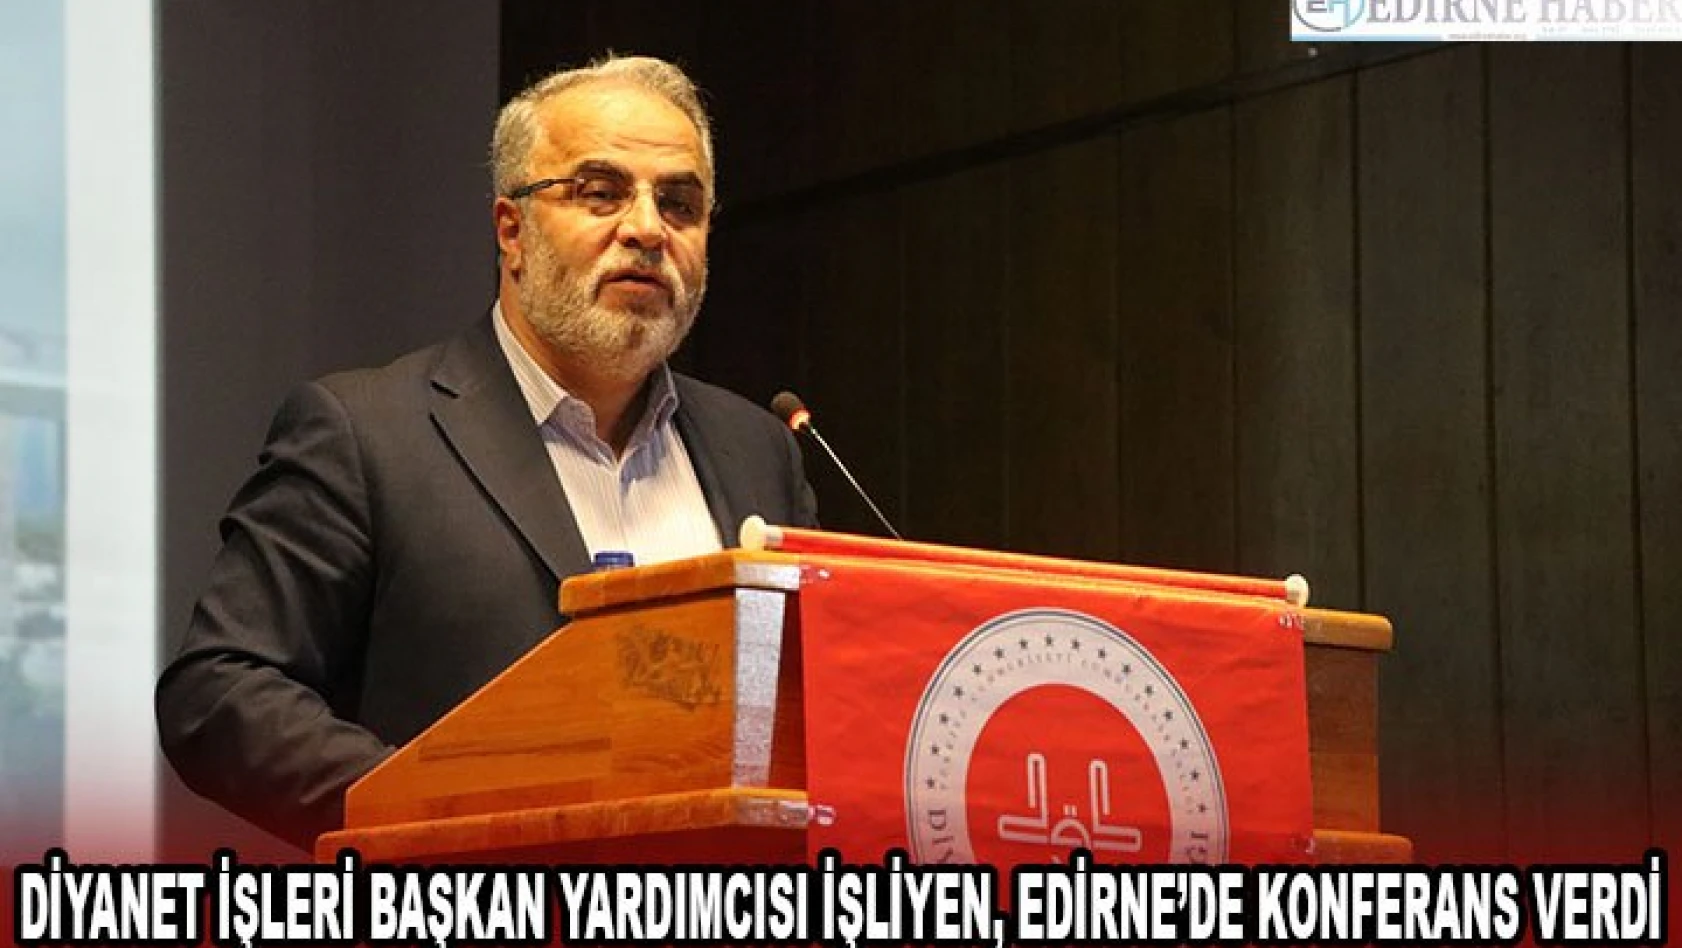 Diyanet İşleri Başkan Yardımcısı İşliyen, Edirne'de konferans verdi